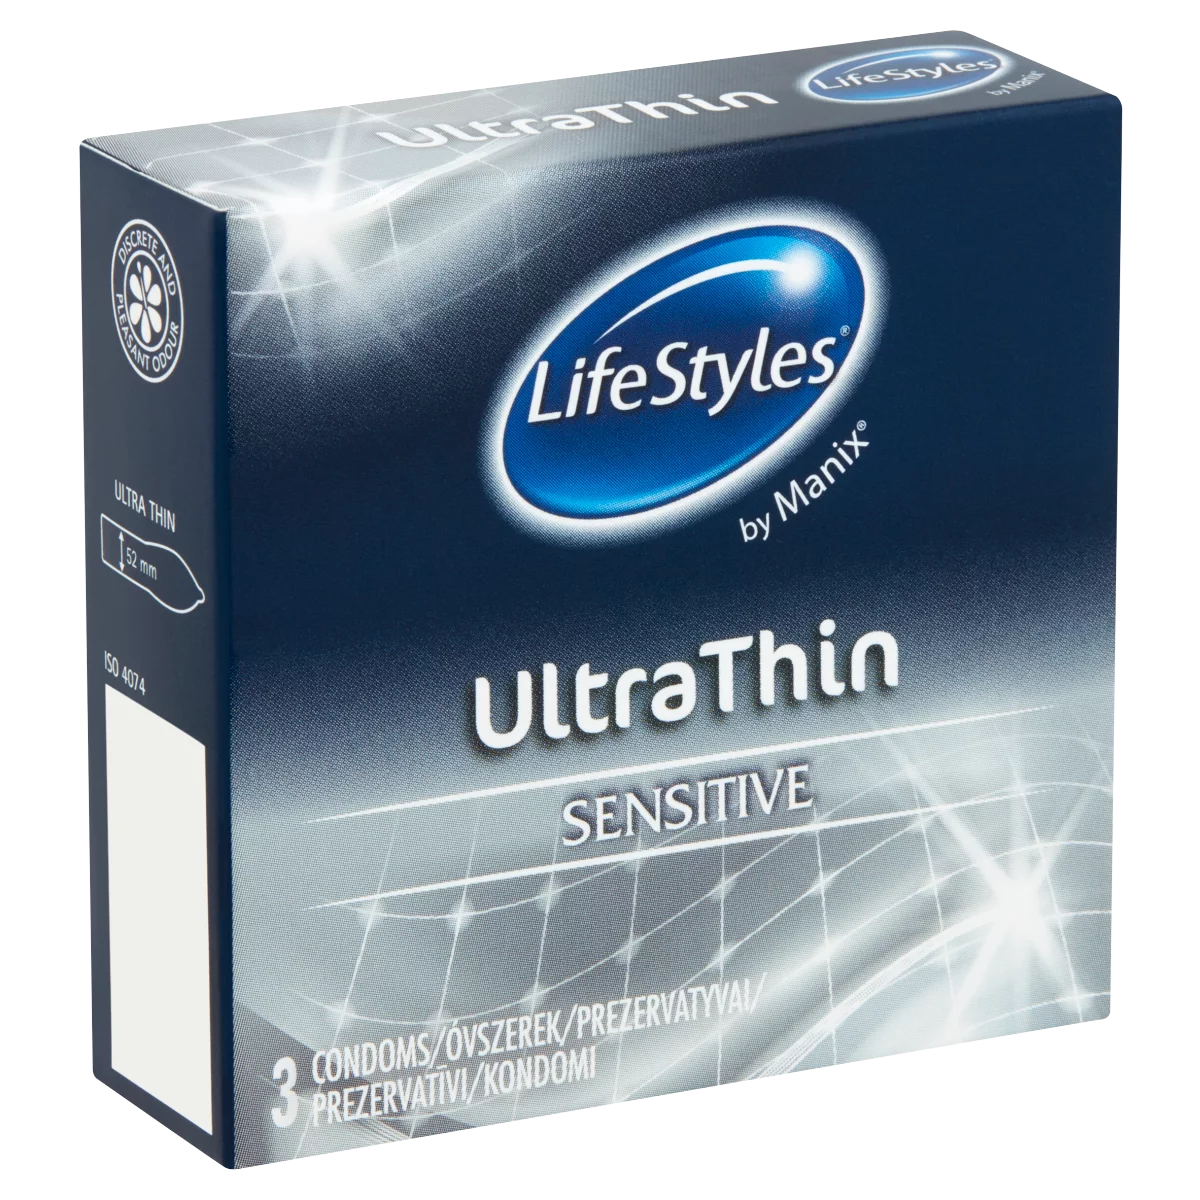 LifeStyles Ultra Thin Sensitive síkosított óvszer 3 db